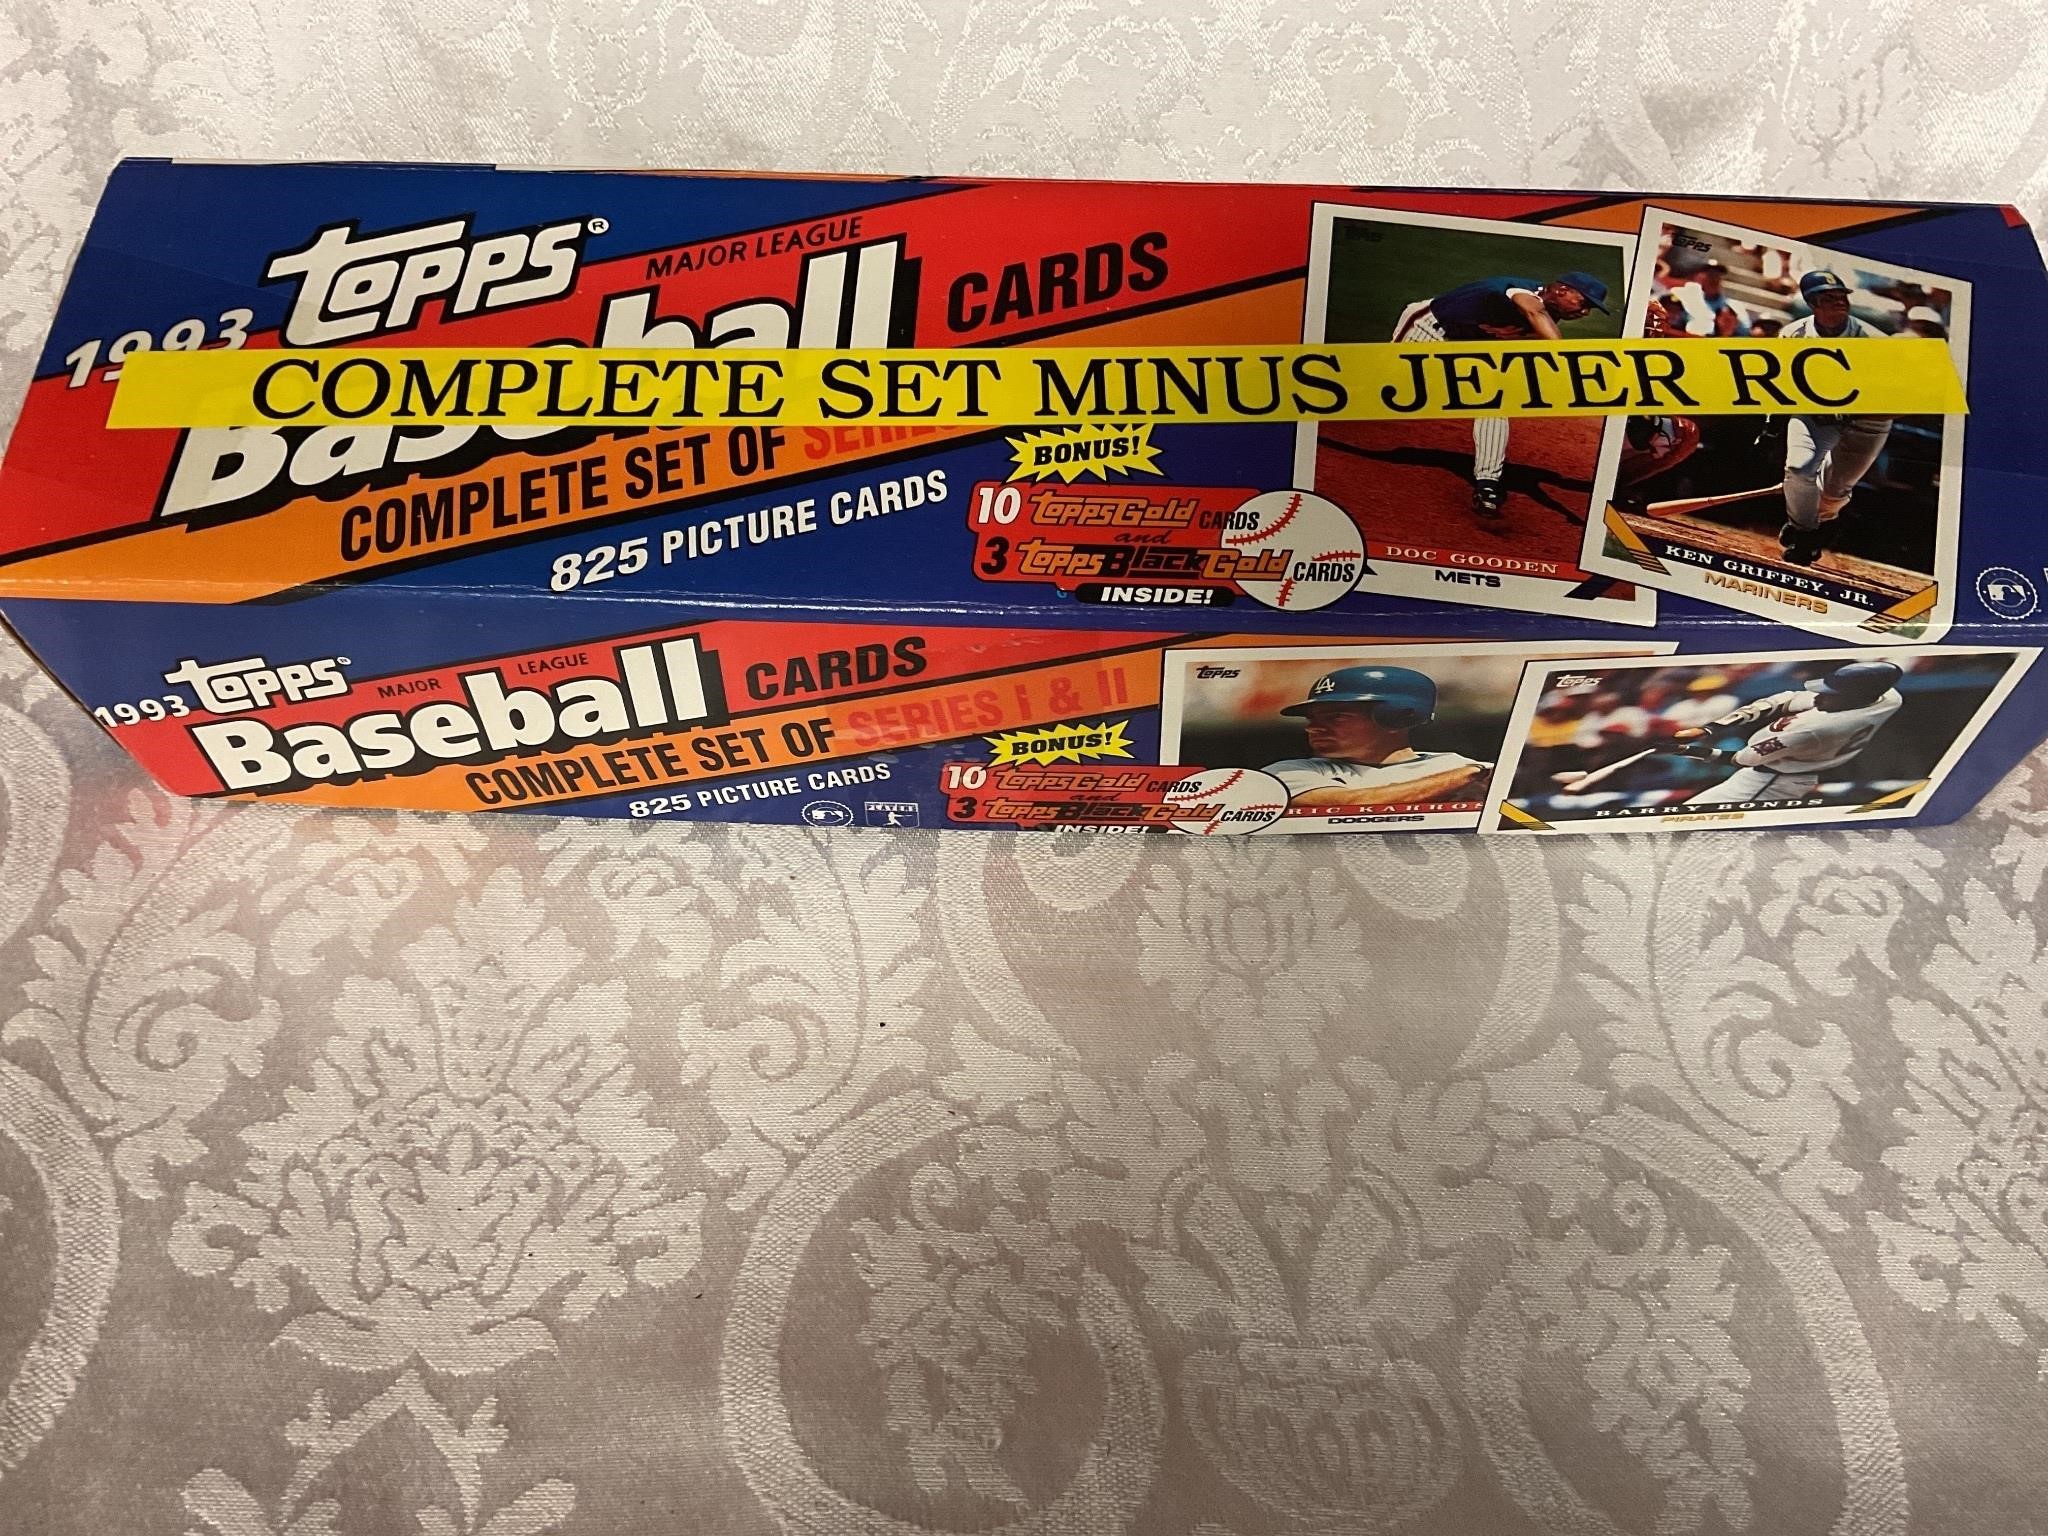 1993 Topps baseball cards